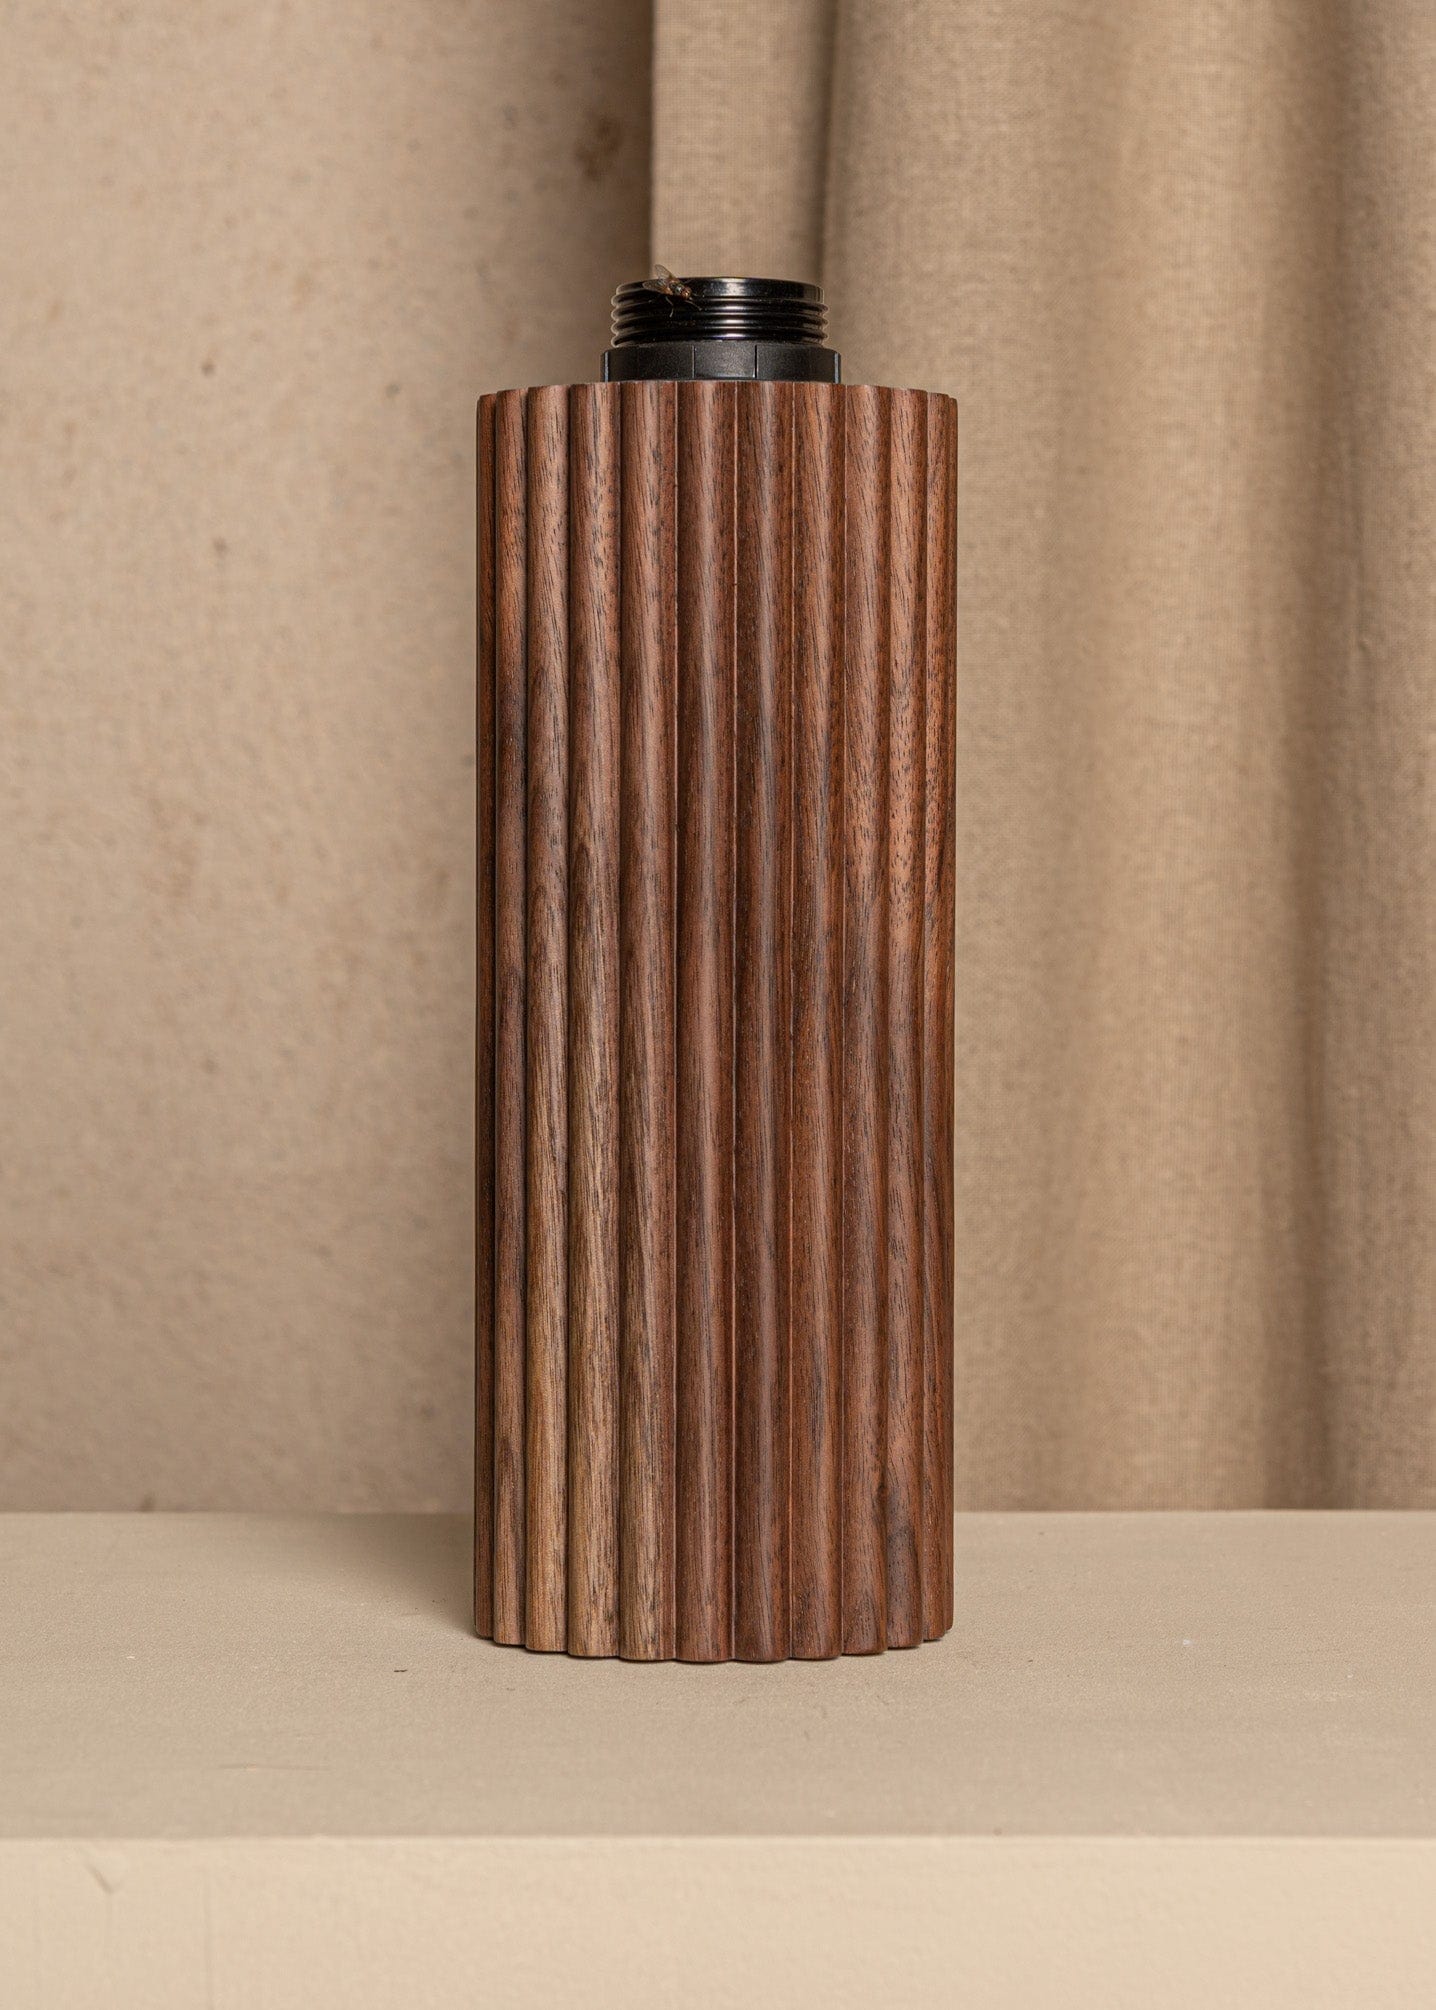 Flutita Table Lamp - Walnut Wood Lamp